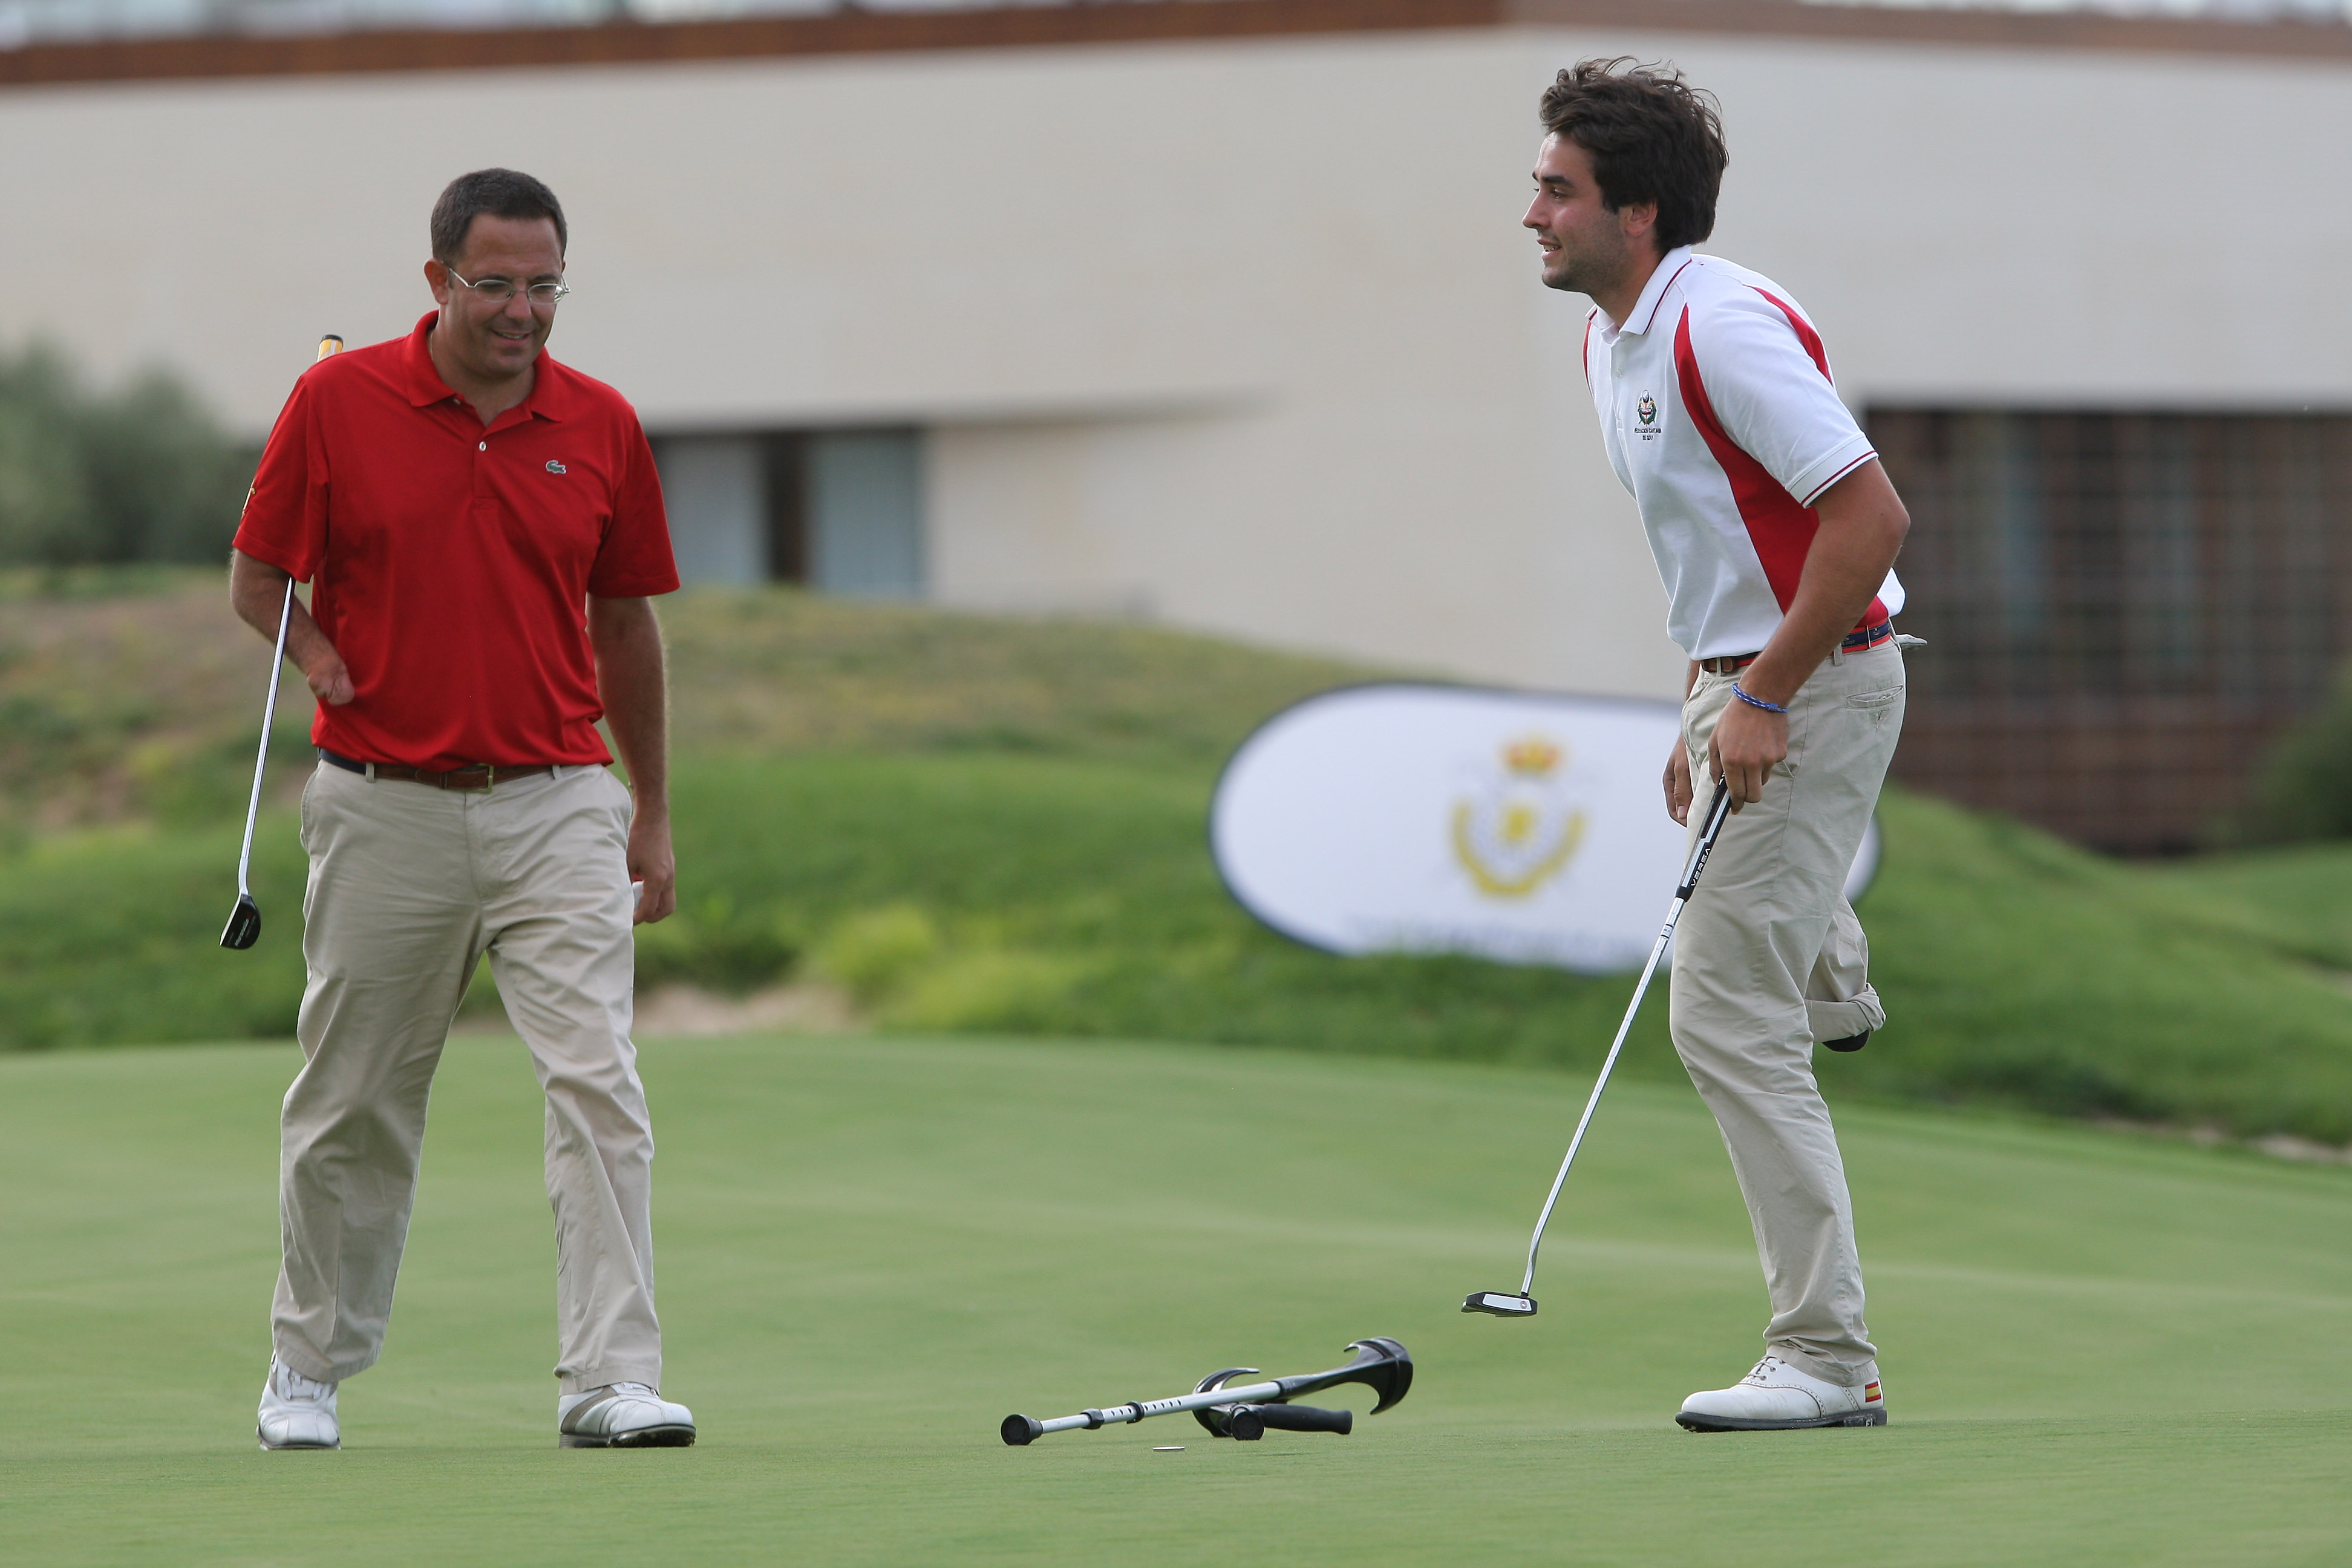 El Golf Adaptado, objetivo prioritario de Federación de Golf de Madrid